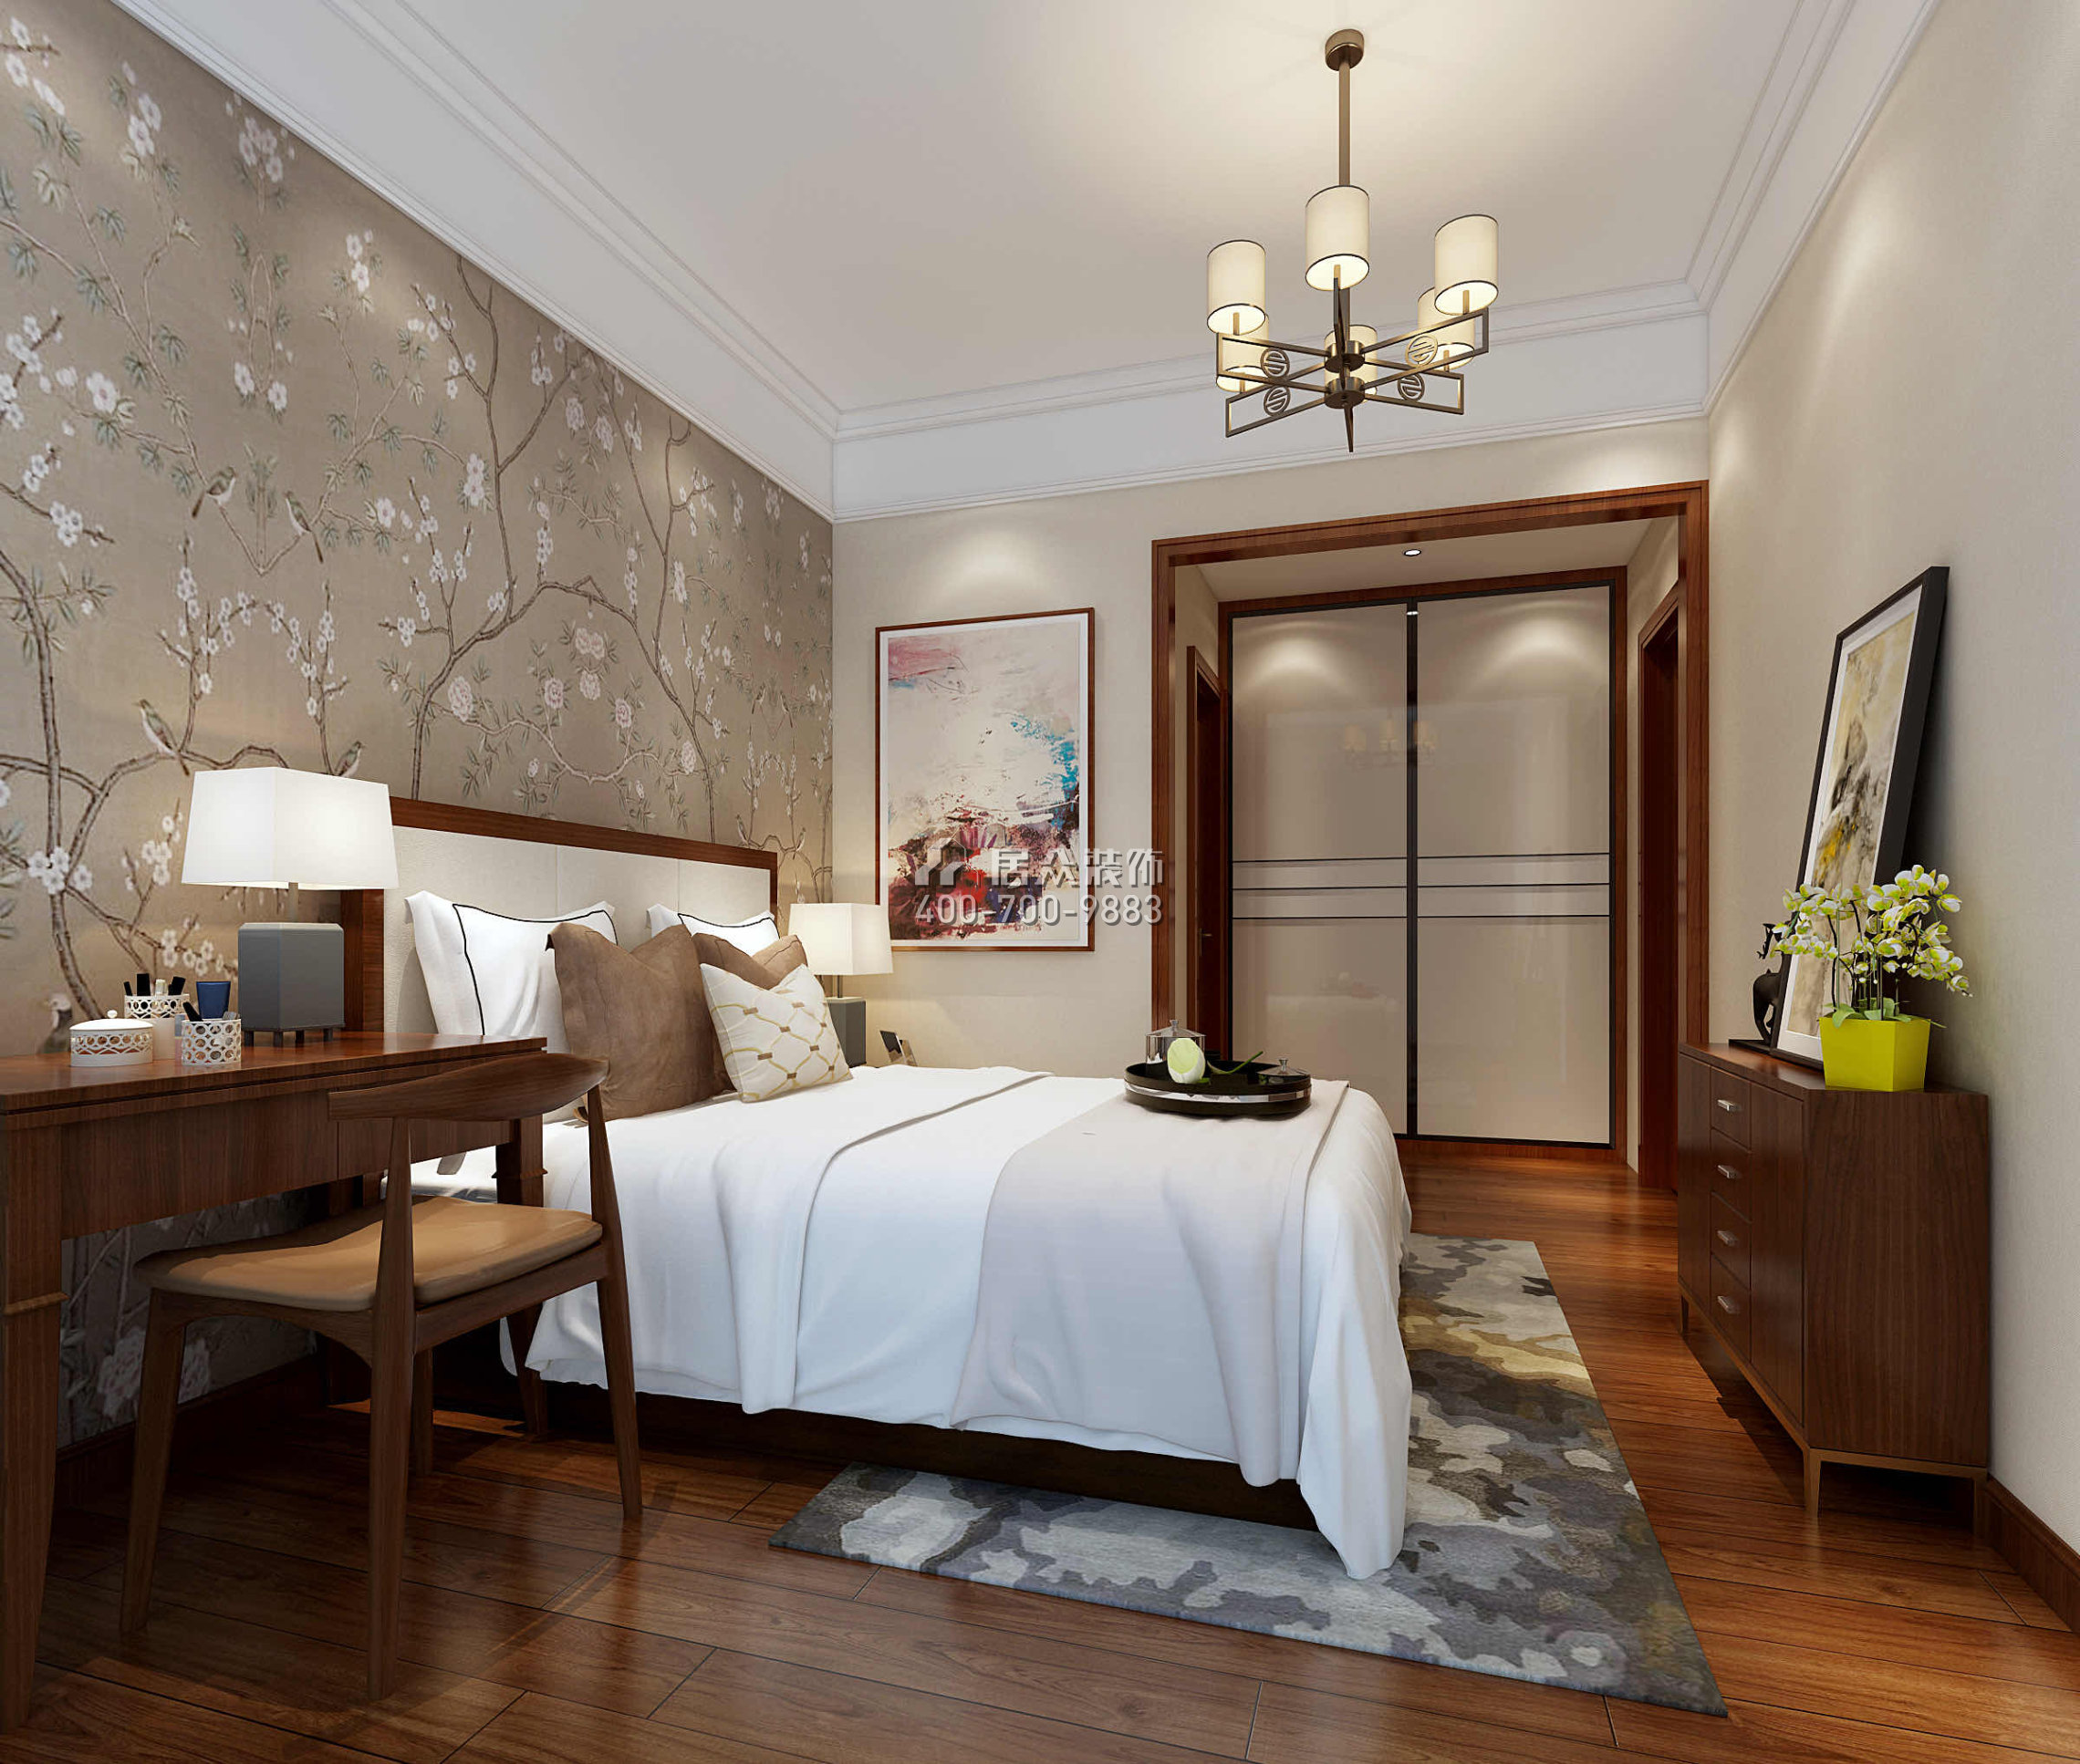 嘉华星际湾180平方米中式风格平层户型卧室装修效果图